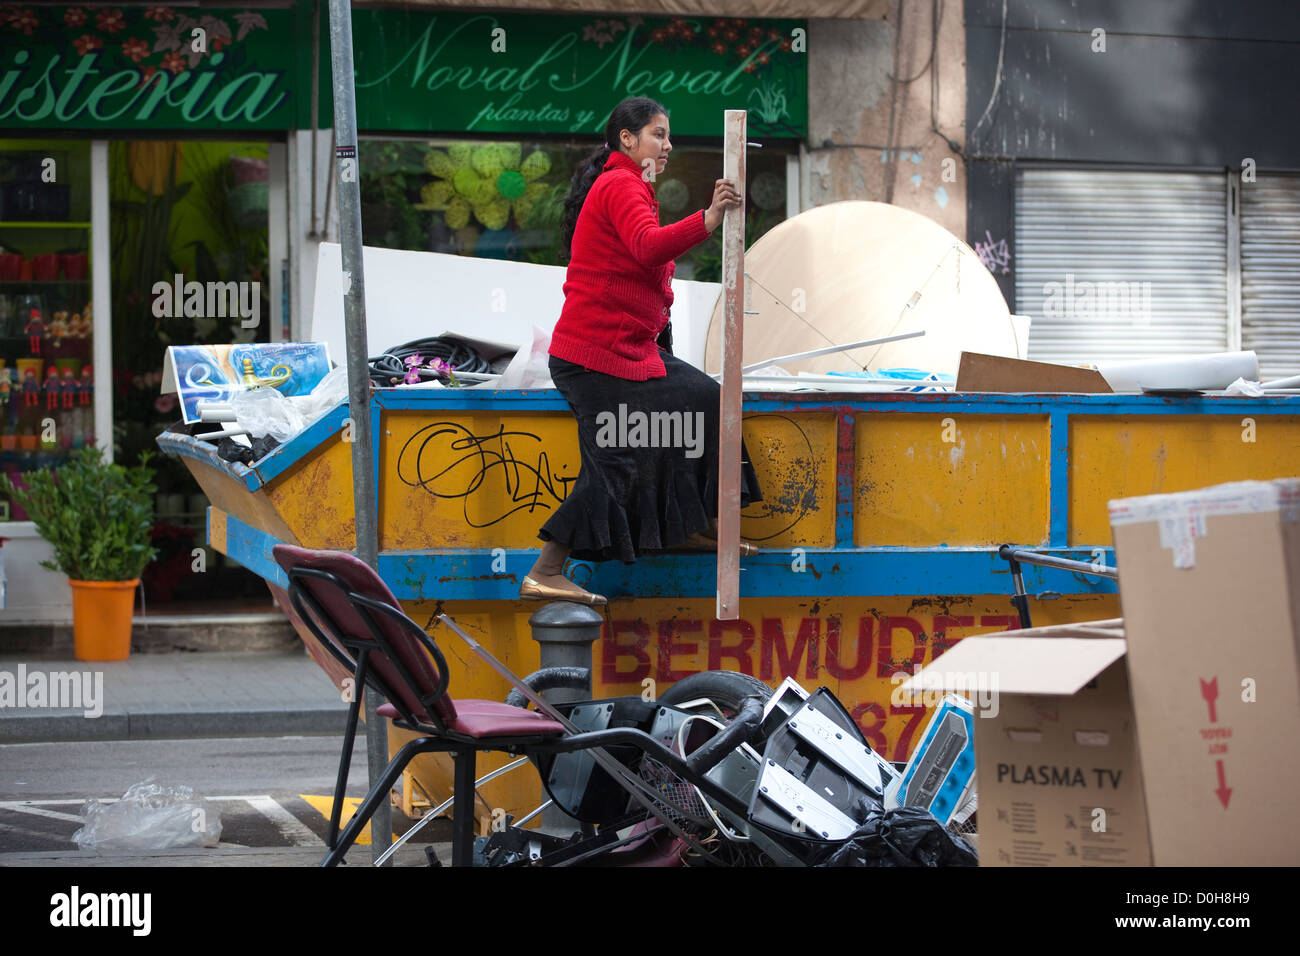 Le pillage du peuple rom saute dans les rues de Barcelone, Catalogne, Espagne, Banque D'Images